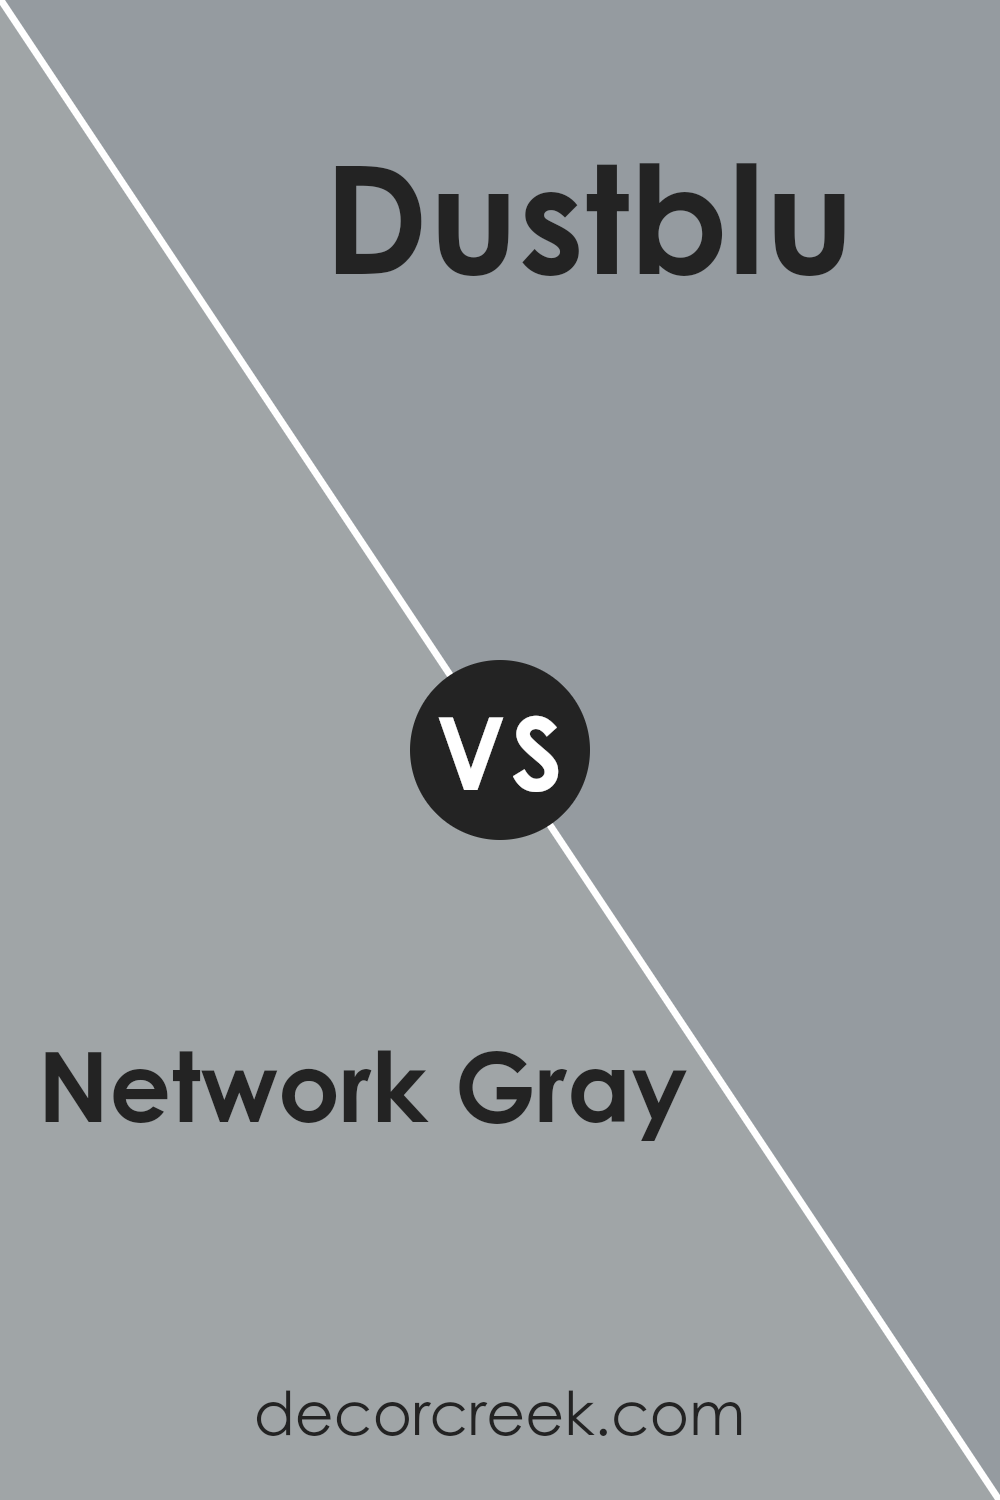 network_gray_sw_7073_vs_dustblu_sw_9161